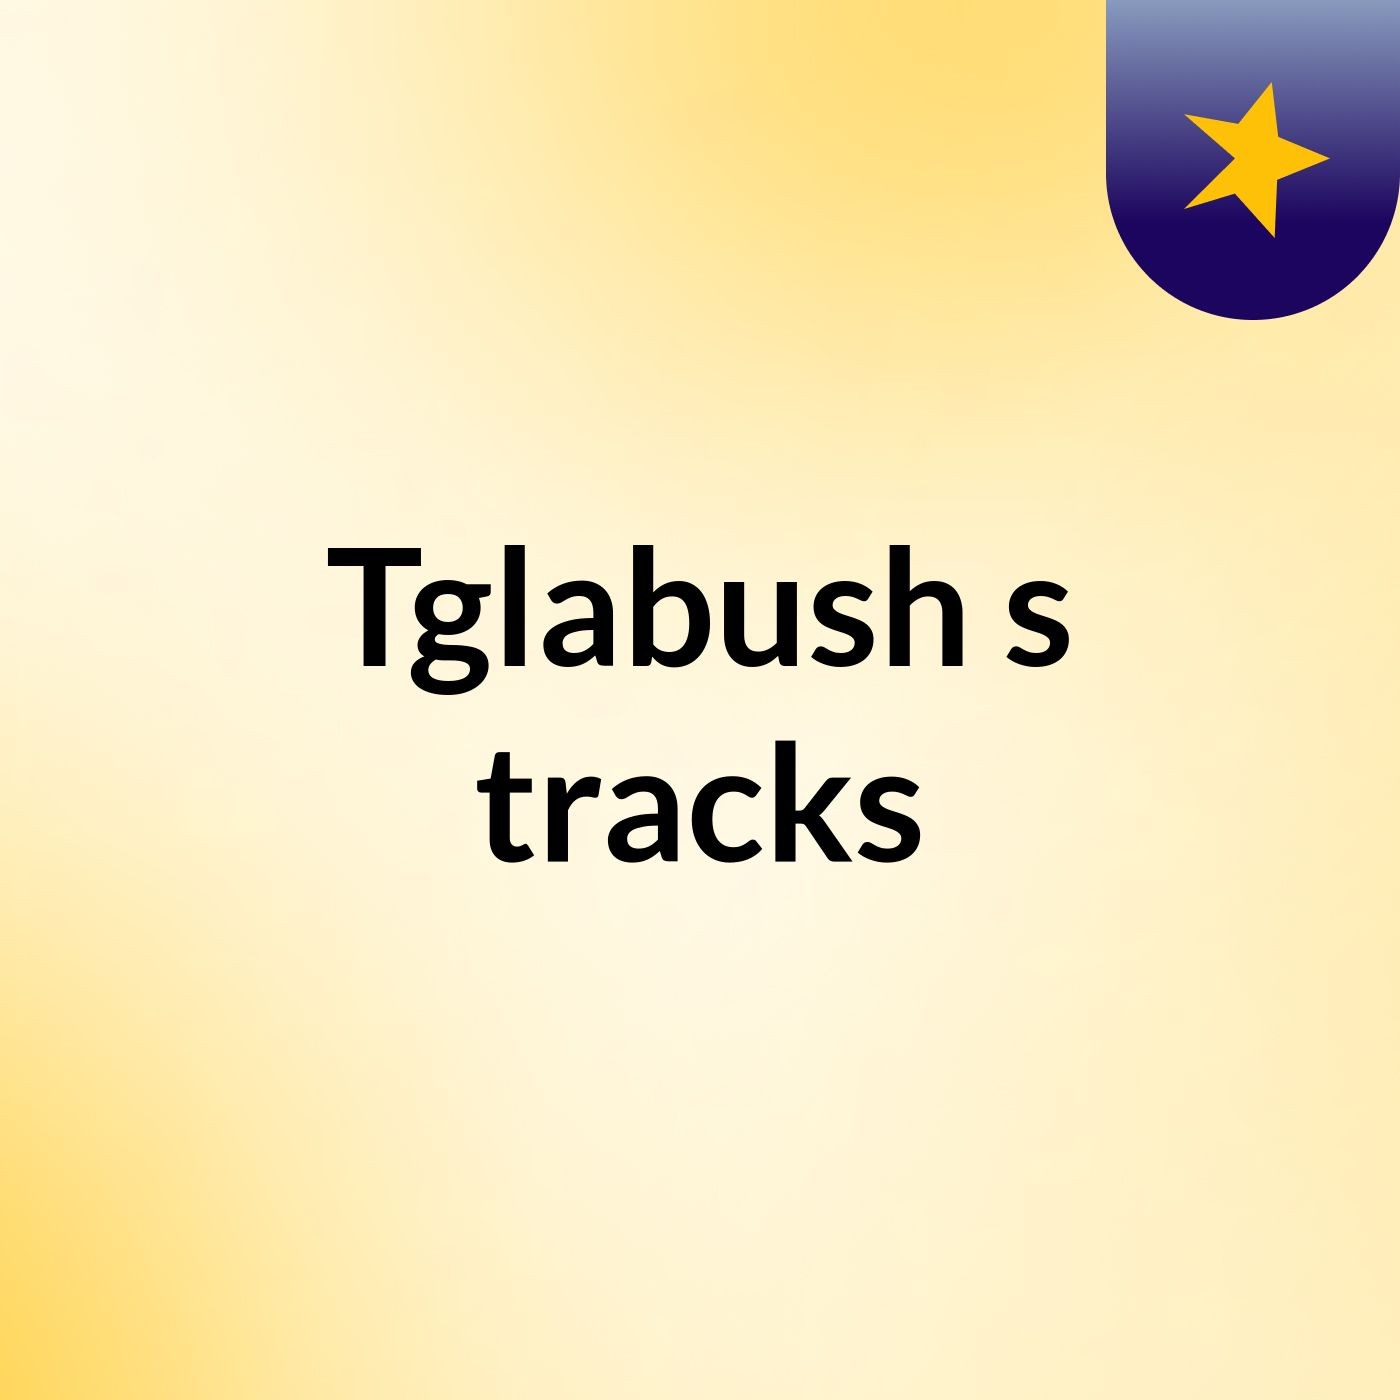 Tglabush's tracks